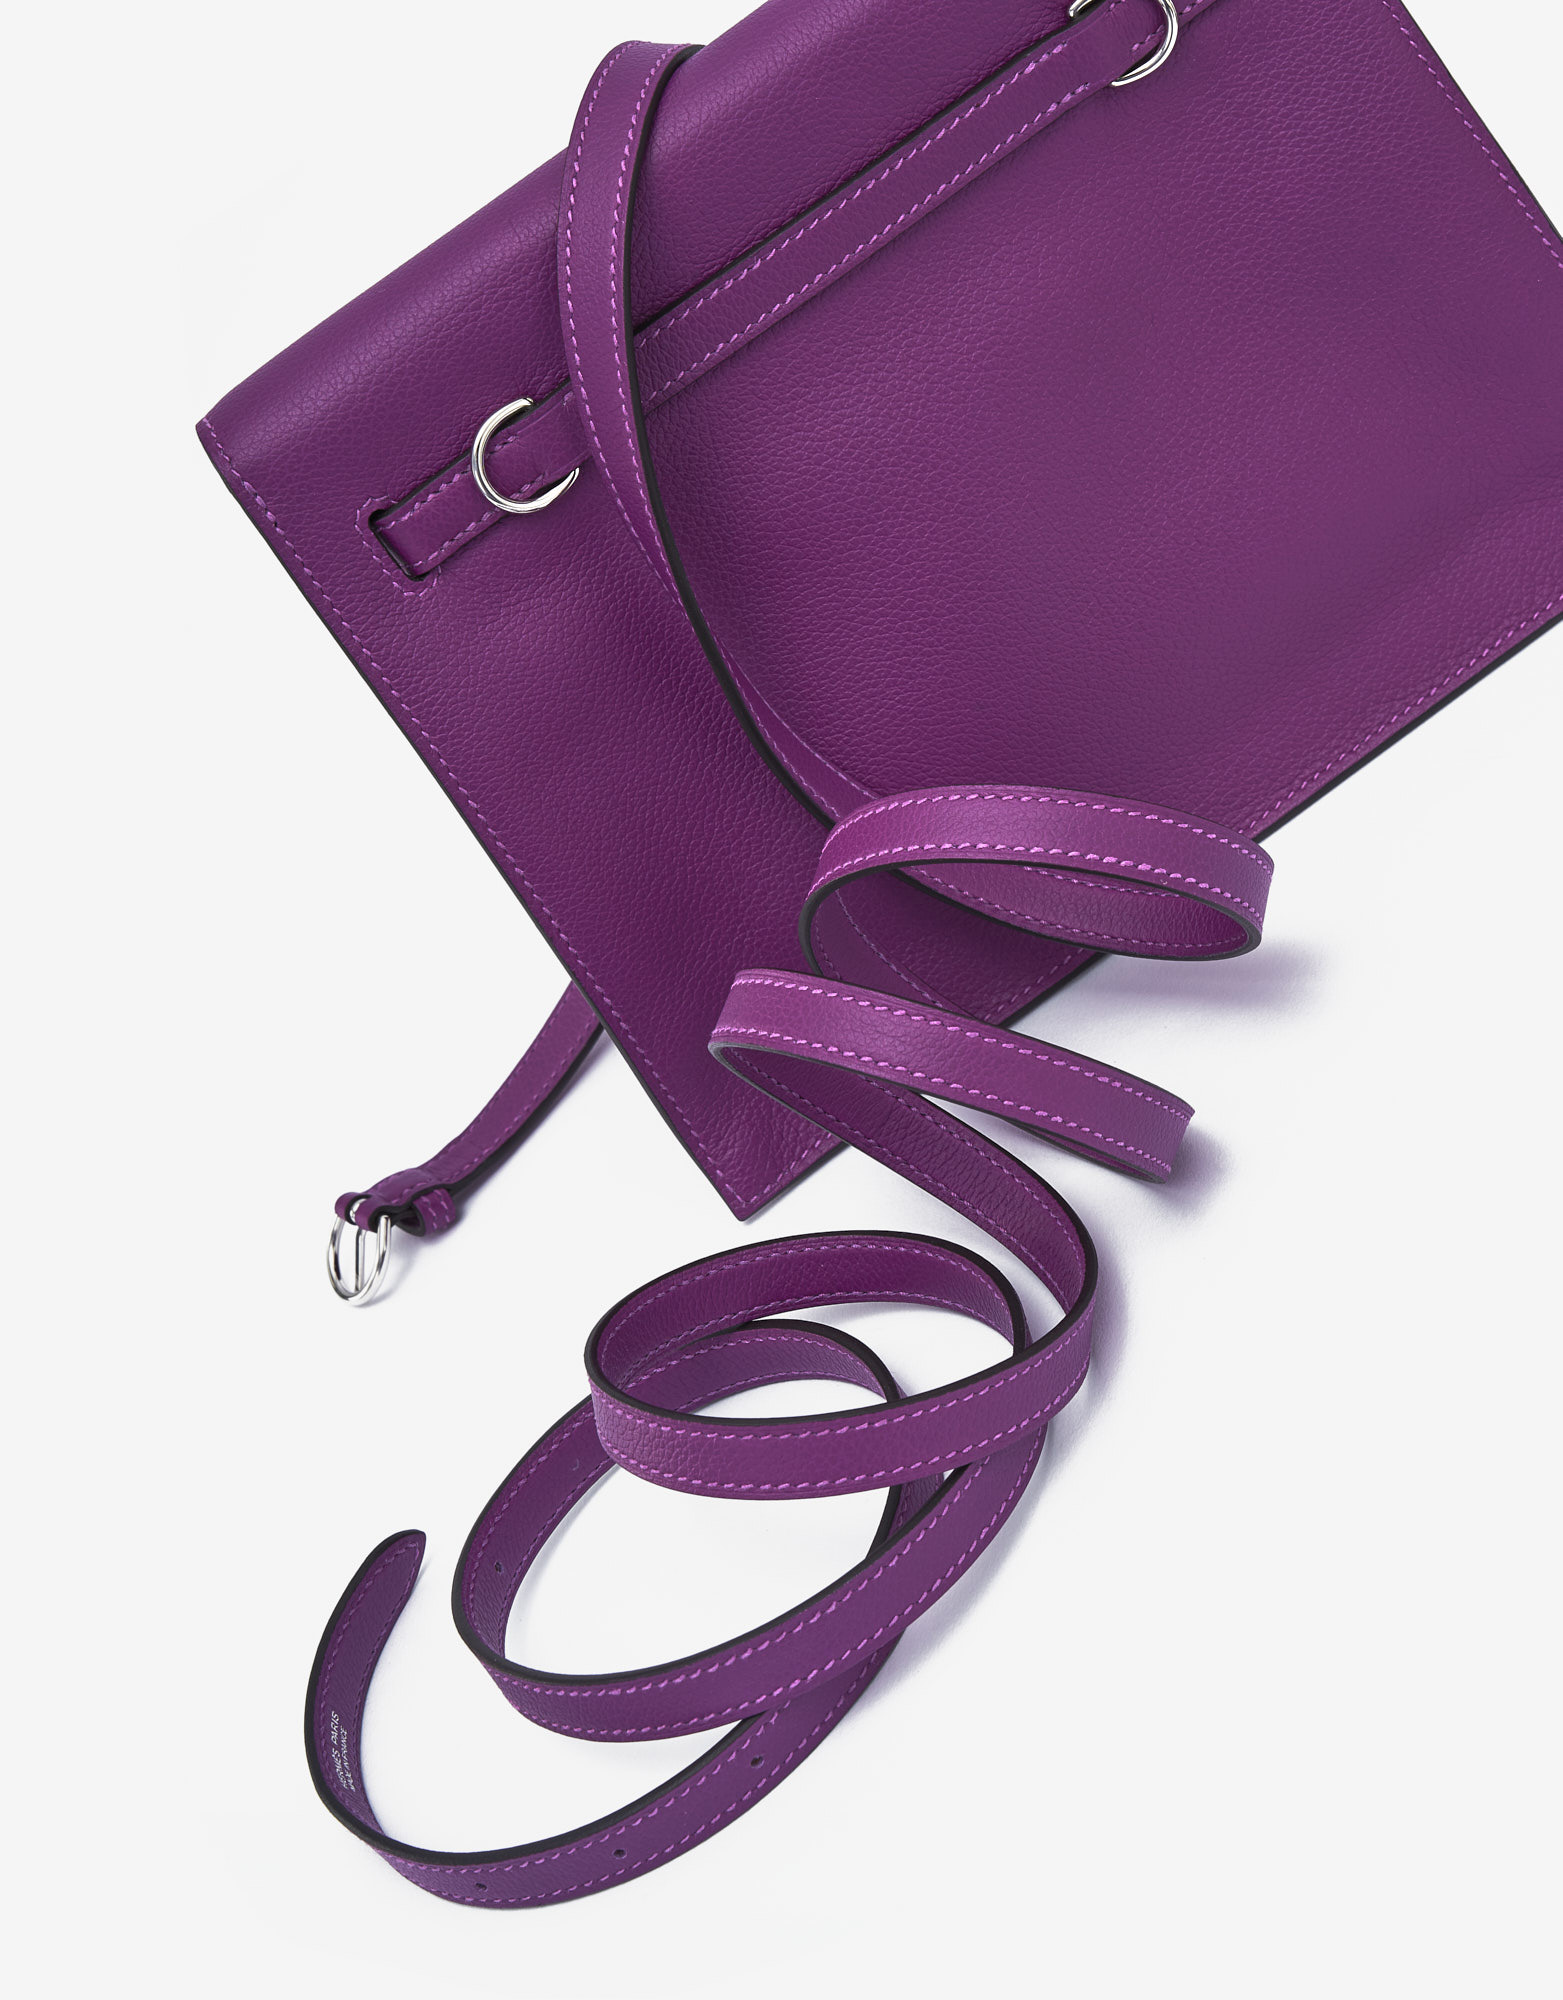 Sac Hermès d'occasion Kelly Danse Evercolor Anemone Violet | Vendez votre sac de créateur sur Saclab.com